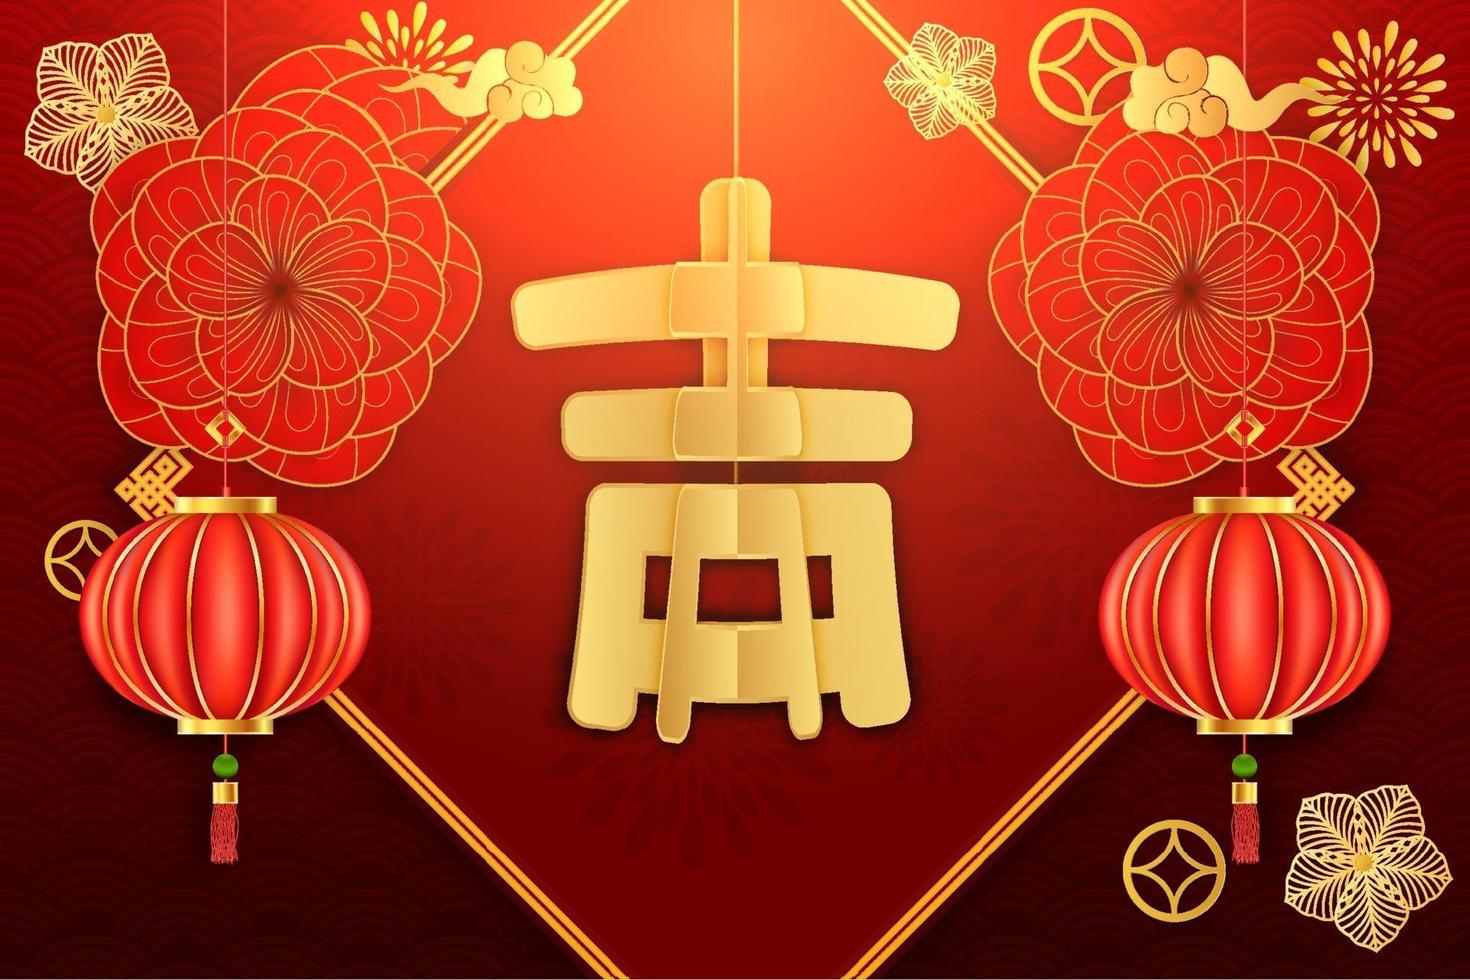 papel cortado desenho chinês de desenho de ano lunar, primavera e auspicioso escrito em palavras chinesas sobre fundo vermelho vetor